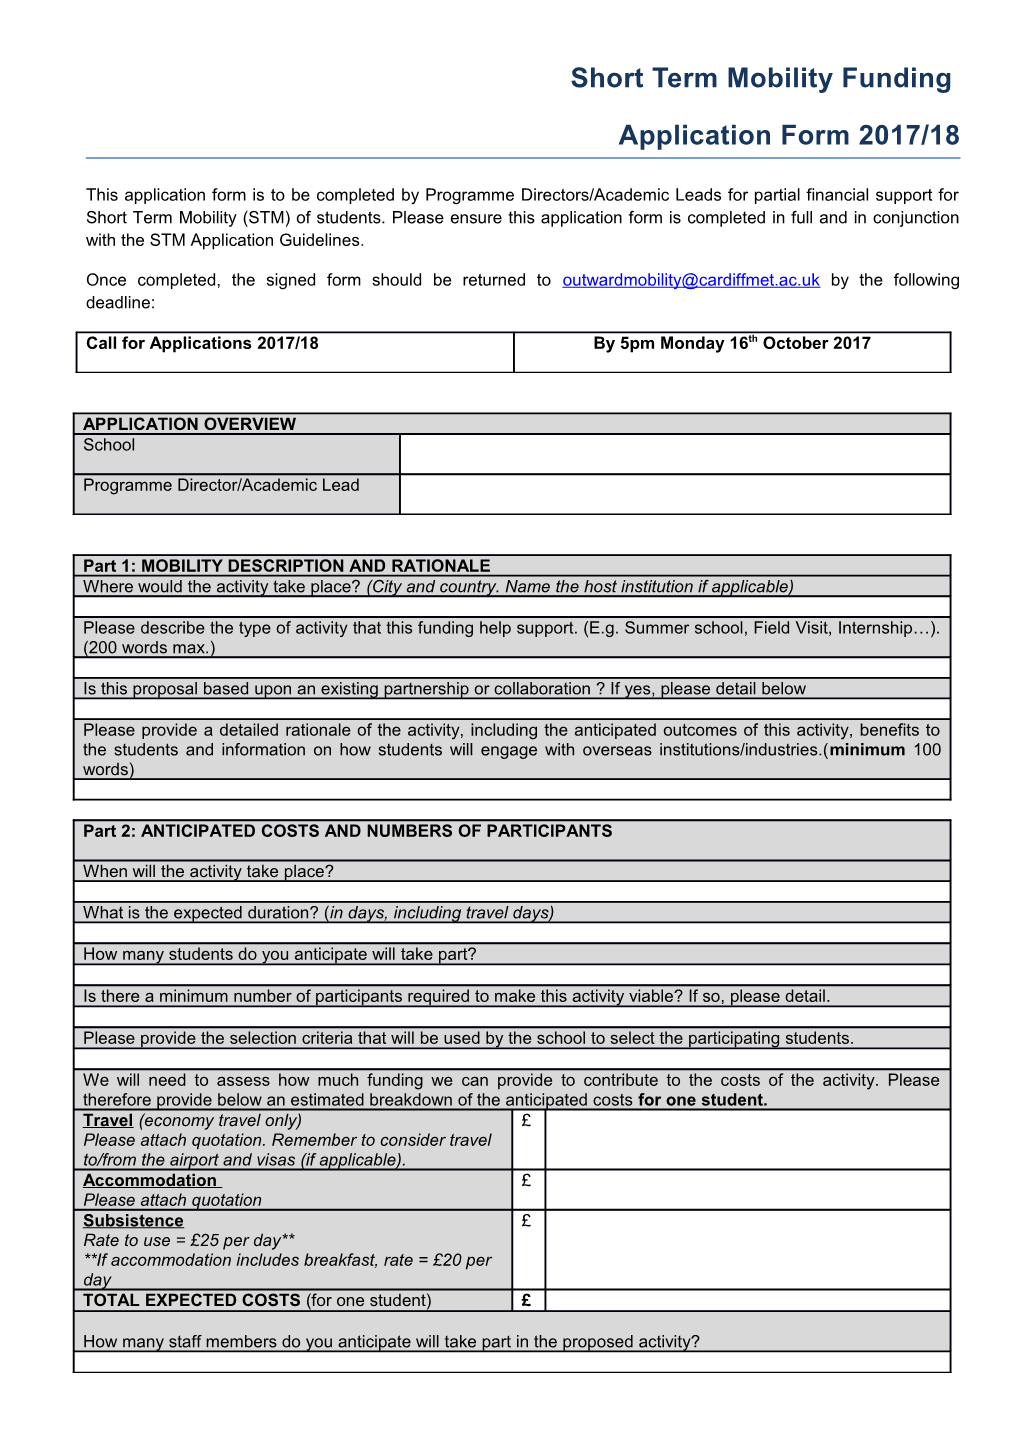 STM Application Form